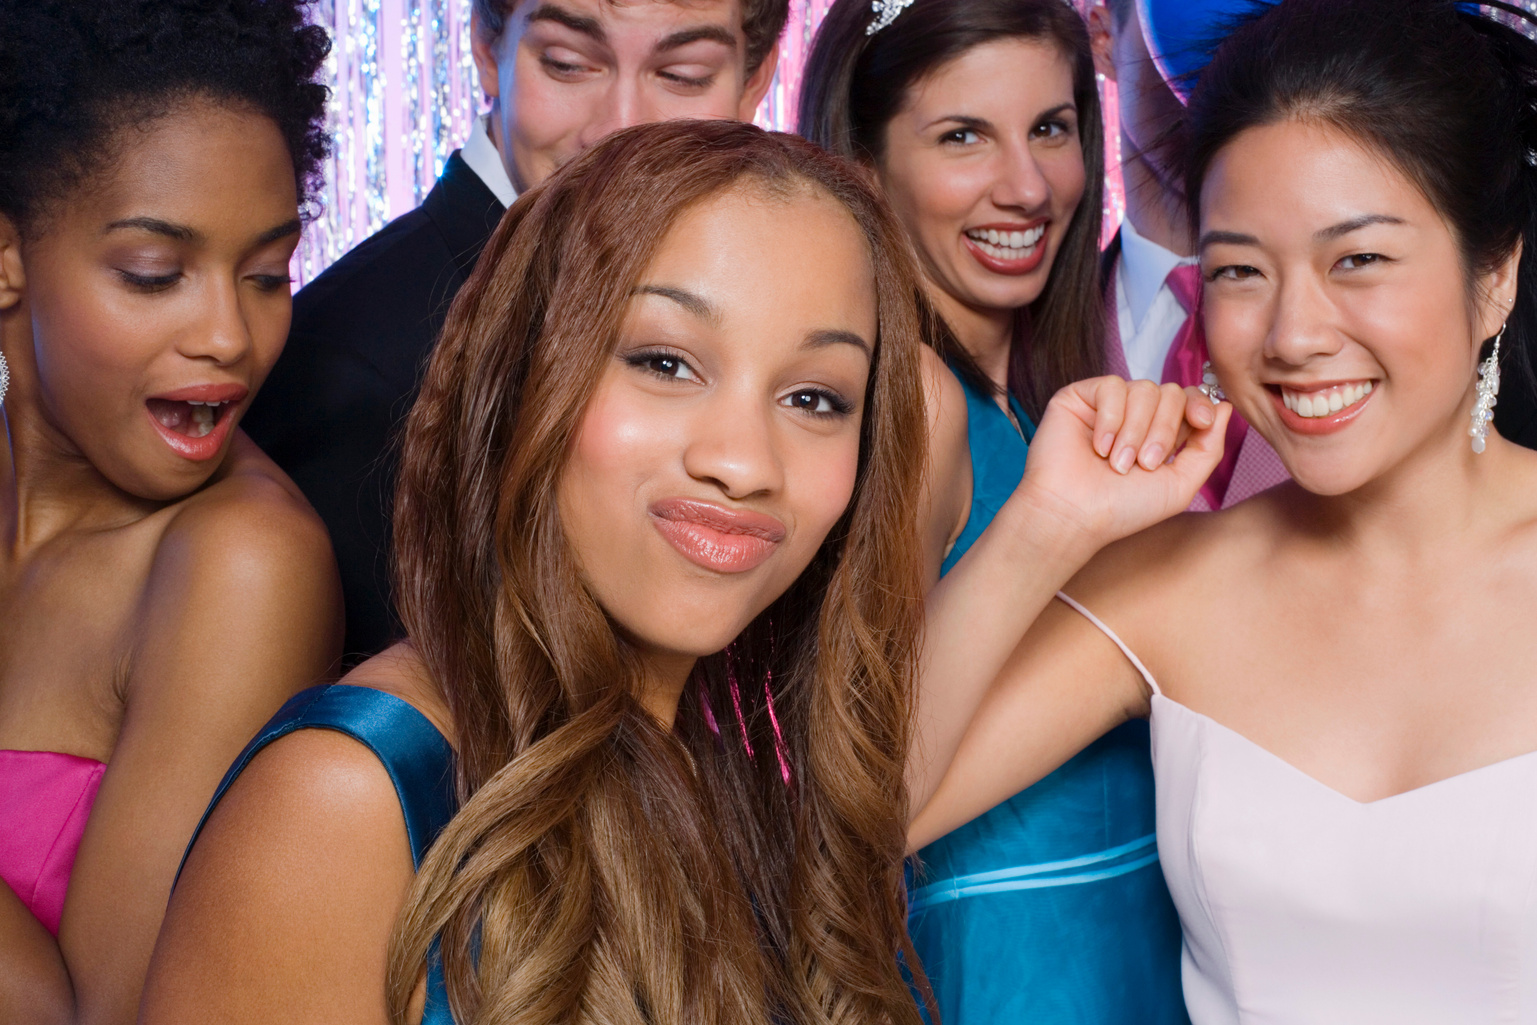 Teens at prom dancing